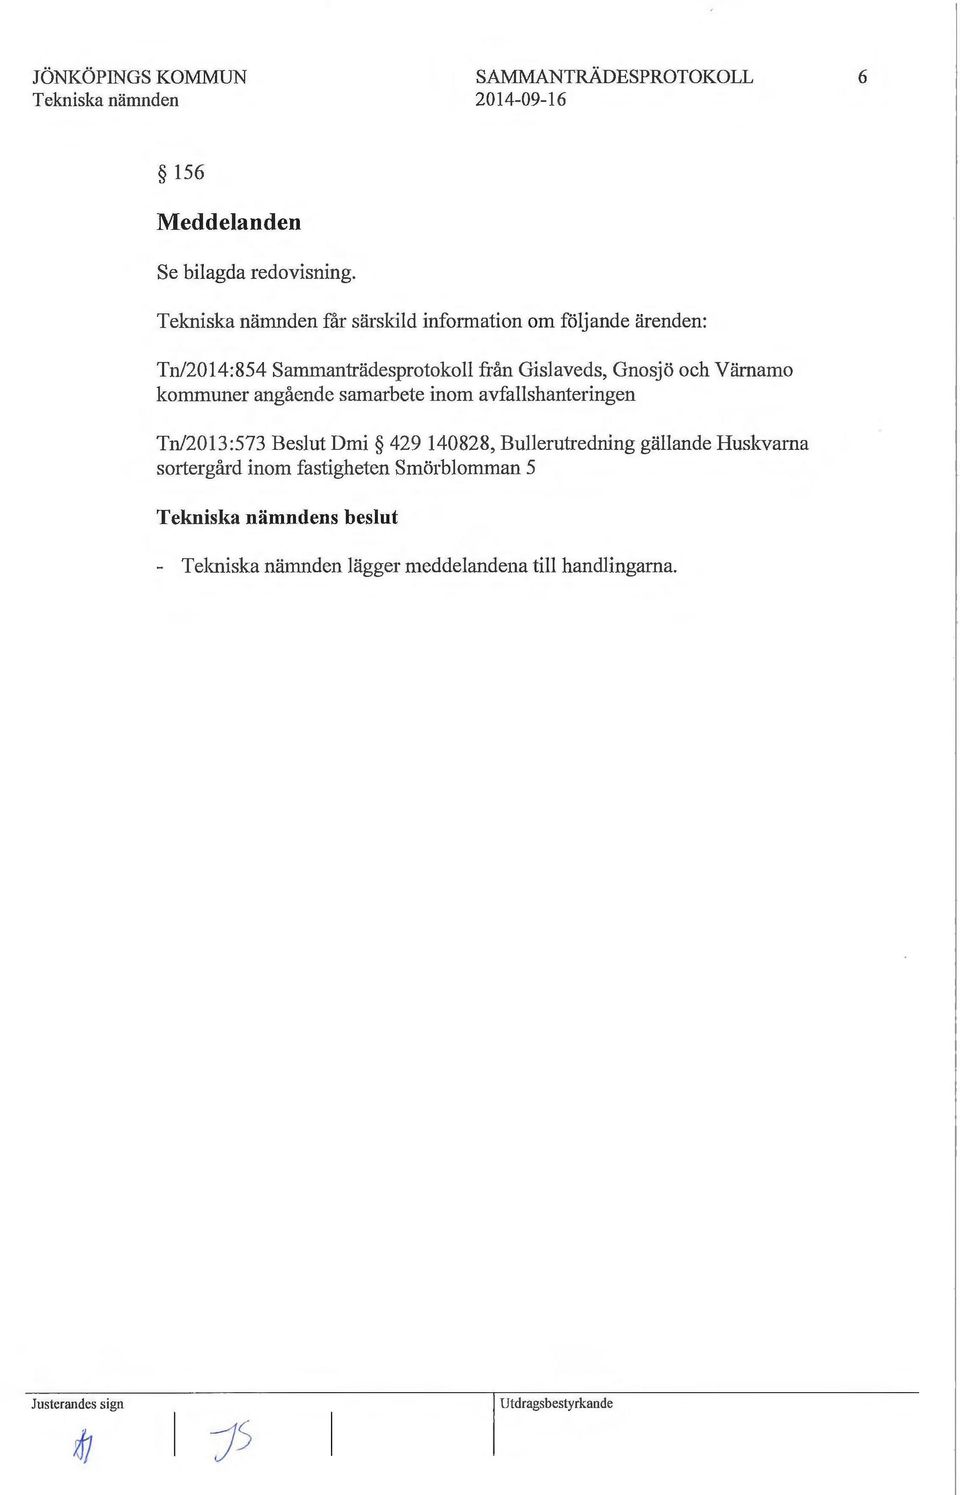 Gnosjö och Värnamo kommuner angående samarbete inom avfallshanteringen Tn/2013:573 Beslut Dmi 429